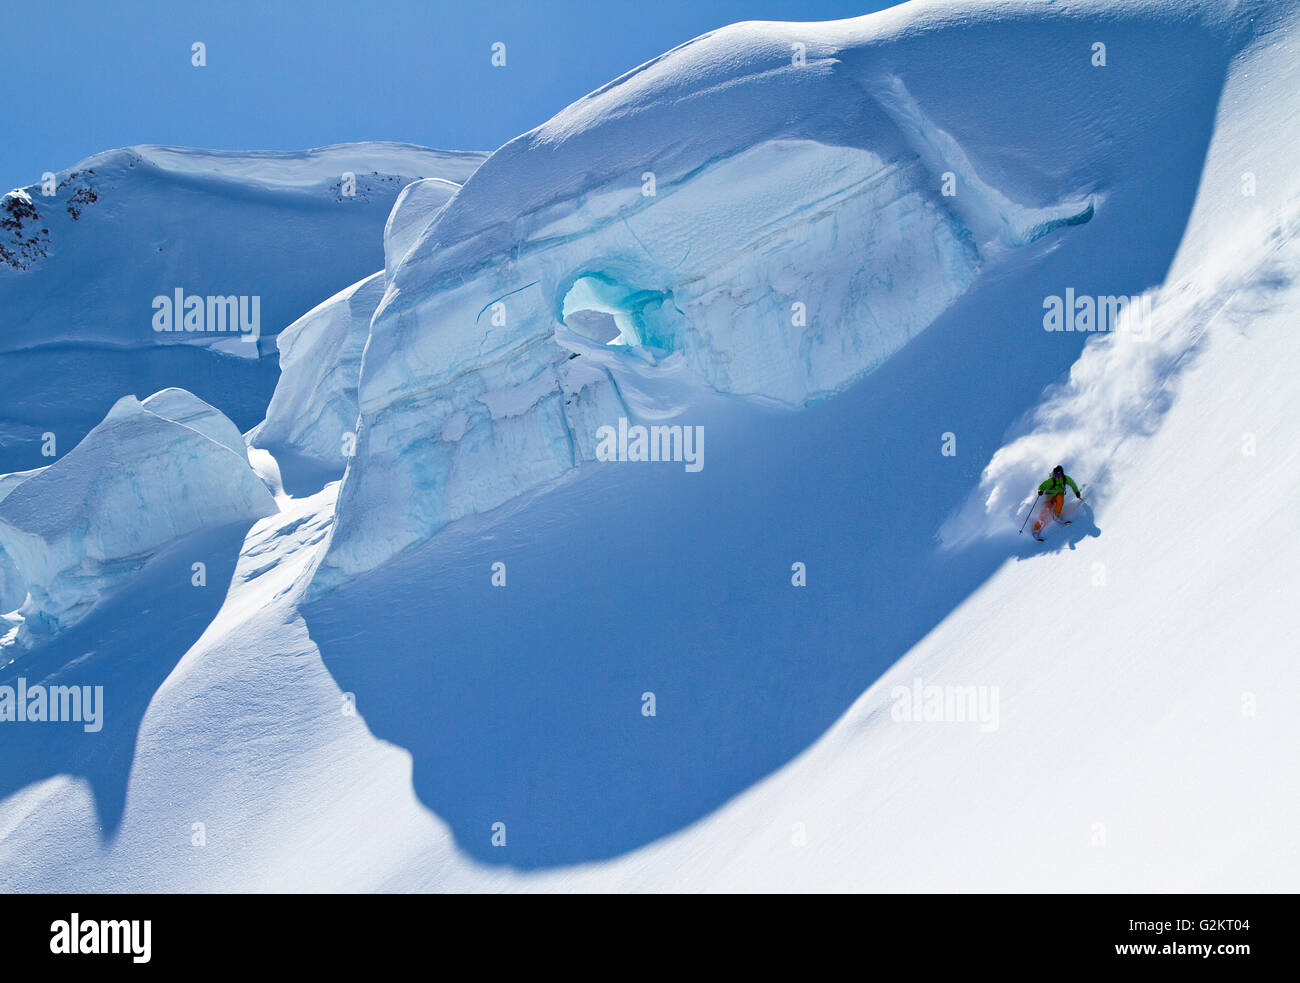 Ski touring and skiing Squamish, British Columbia, Canada Stock Photo